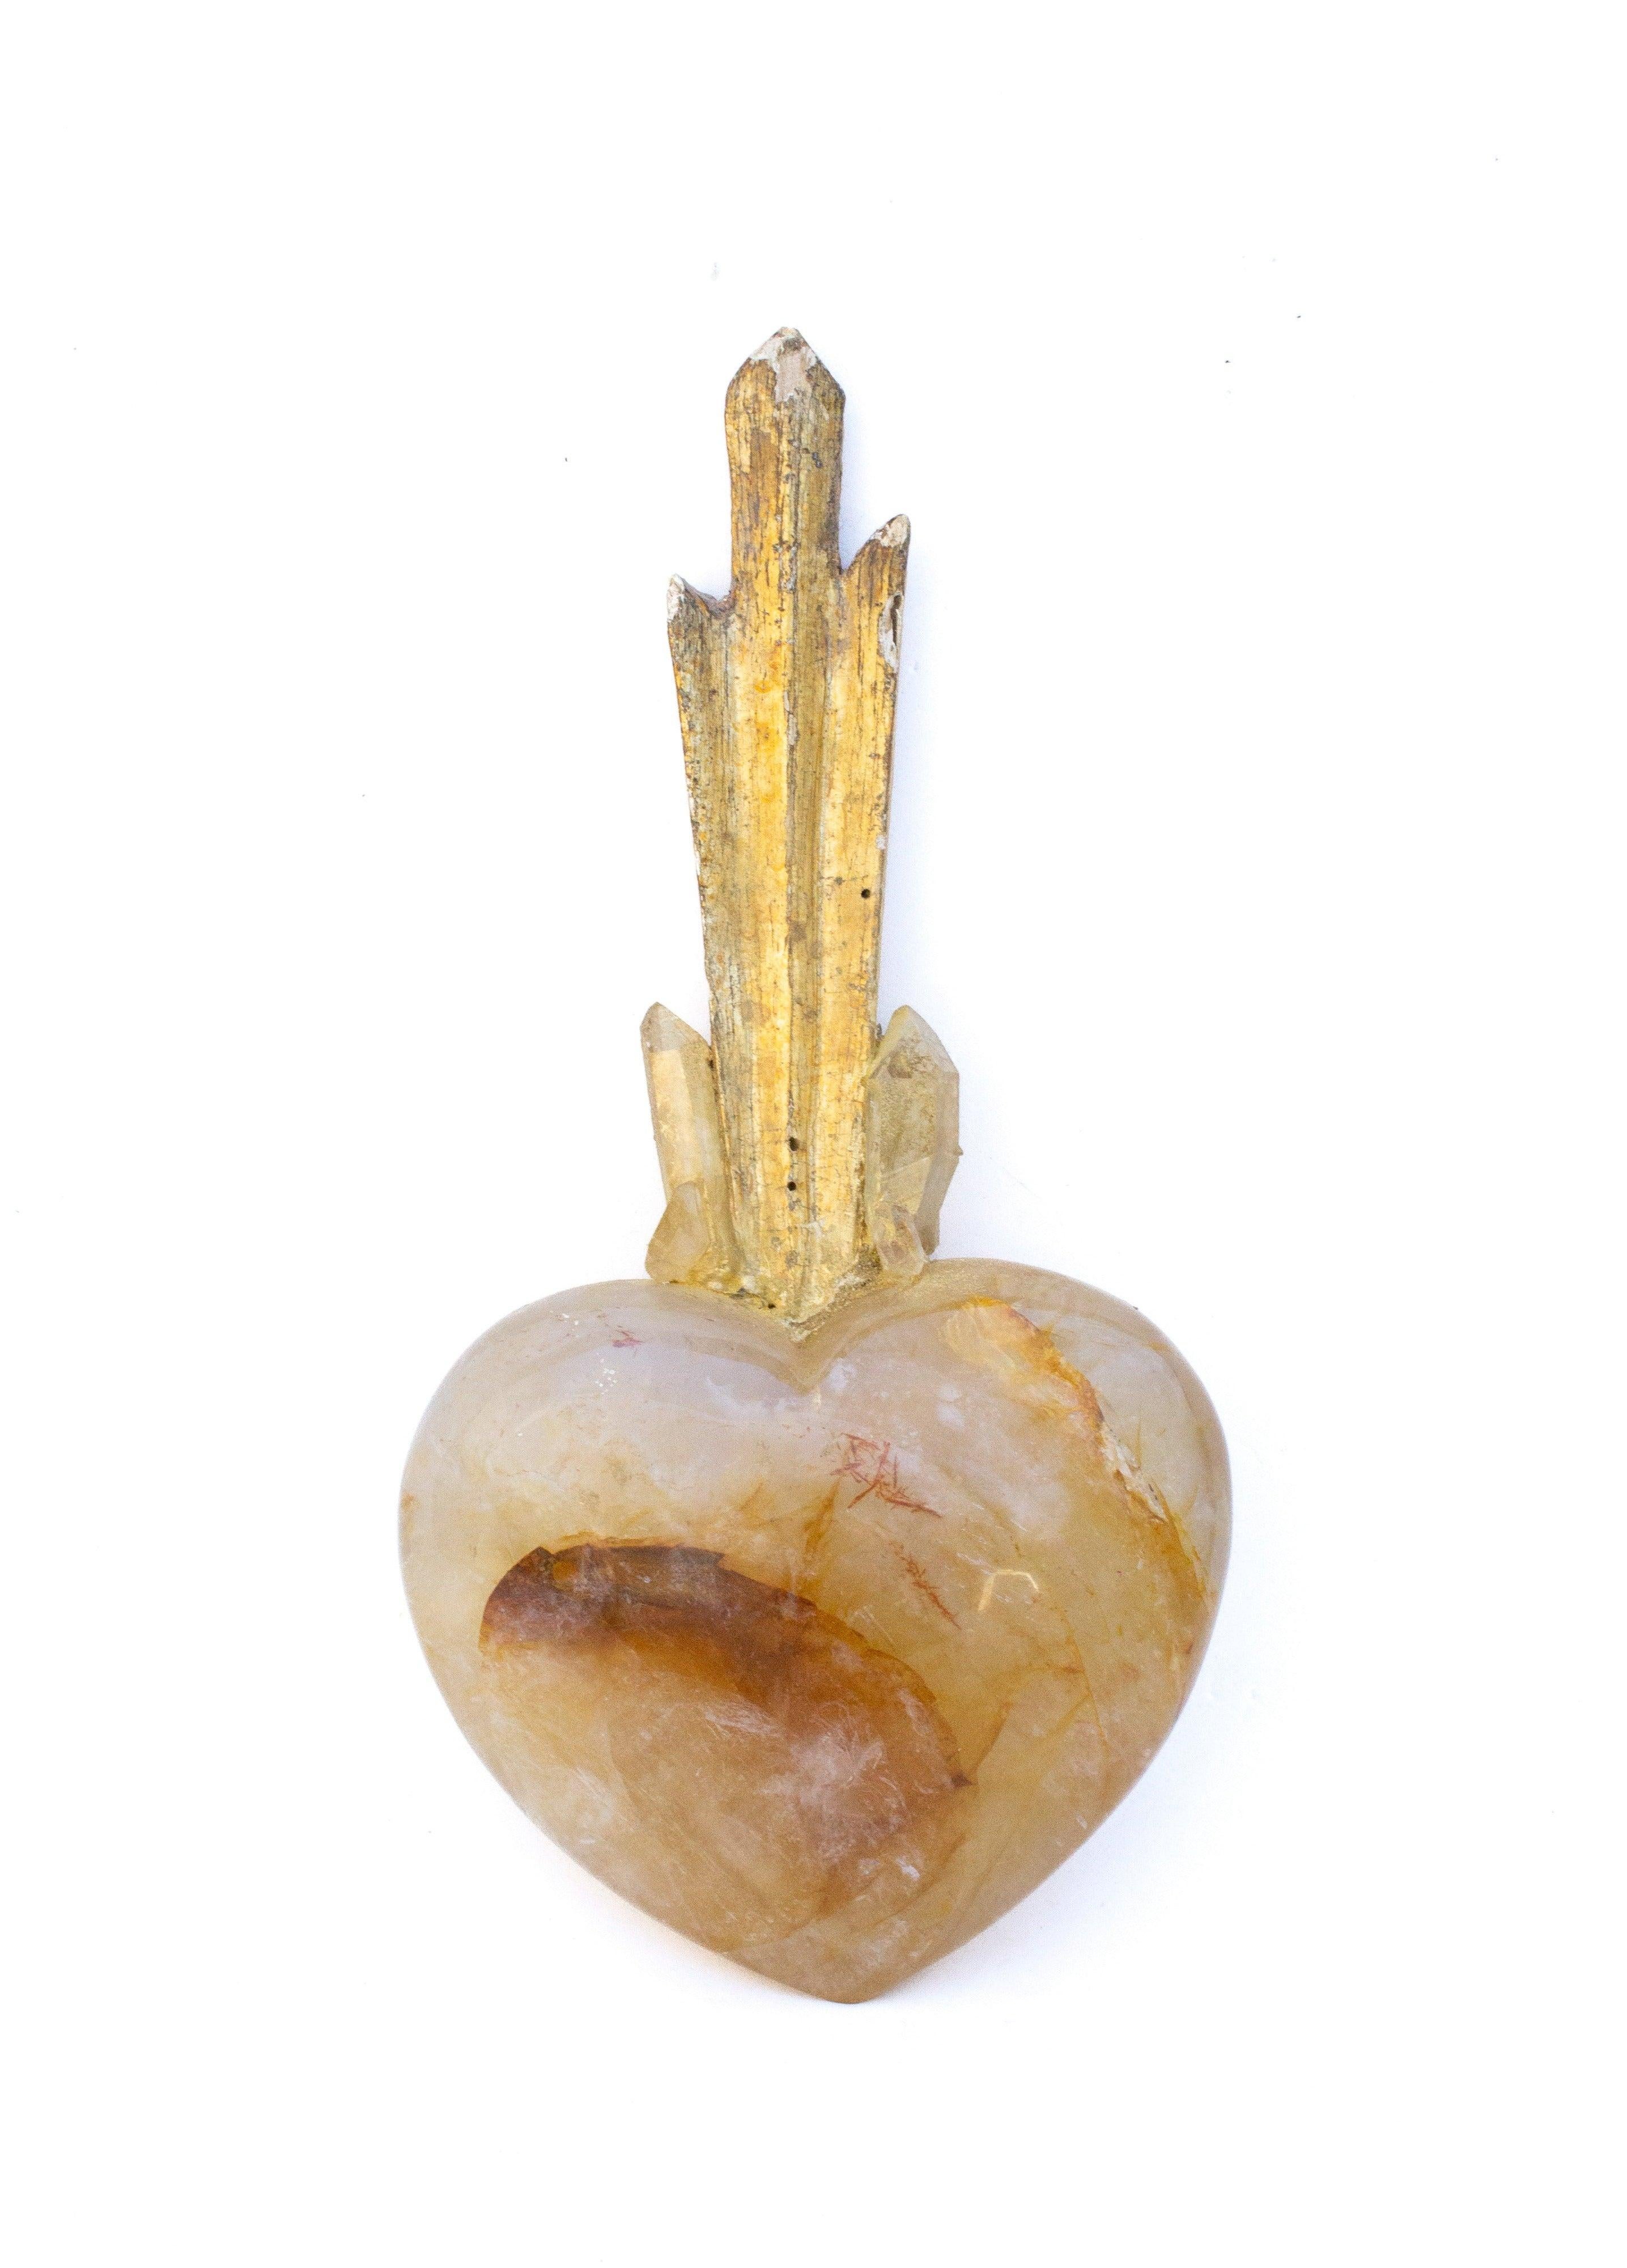 Sacré-Cœur sculptural - Rayon de soleil italien du XVIIIe siècle monté sur un cœur hématoïde jaune et orné de pointes de quartz de cristal jaune. La pièce s'inspire du 